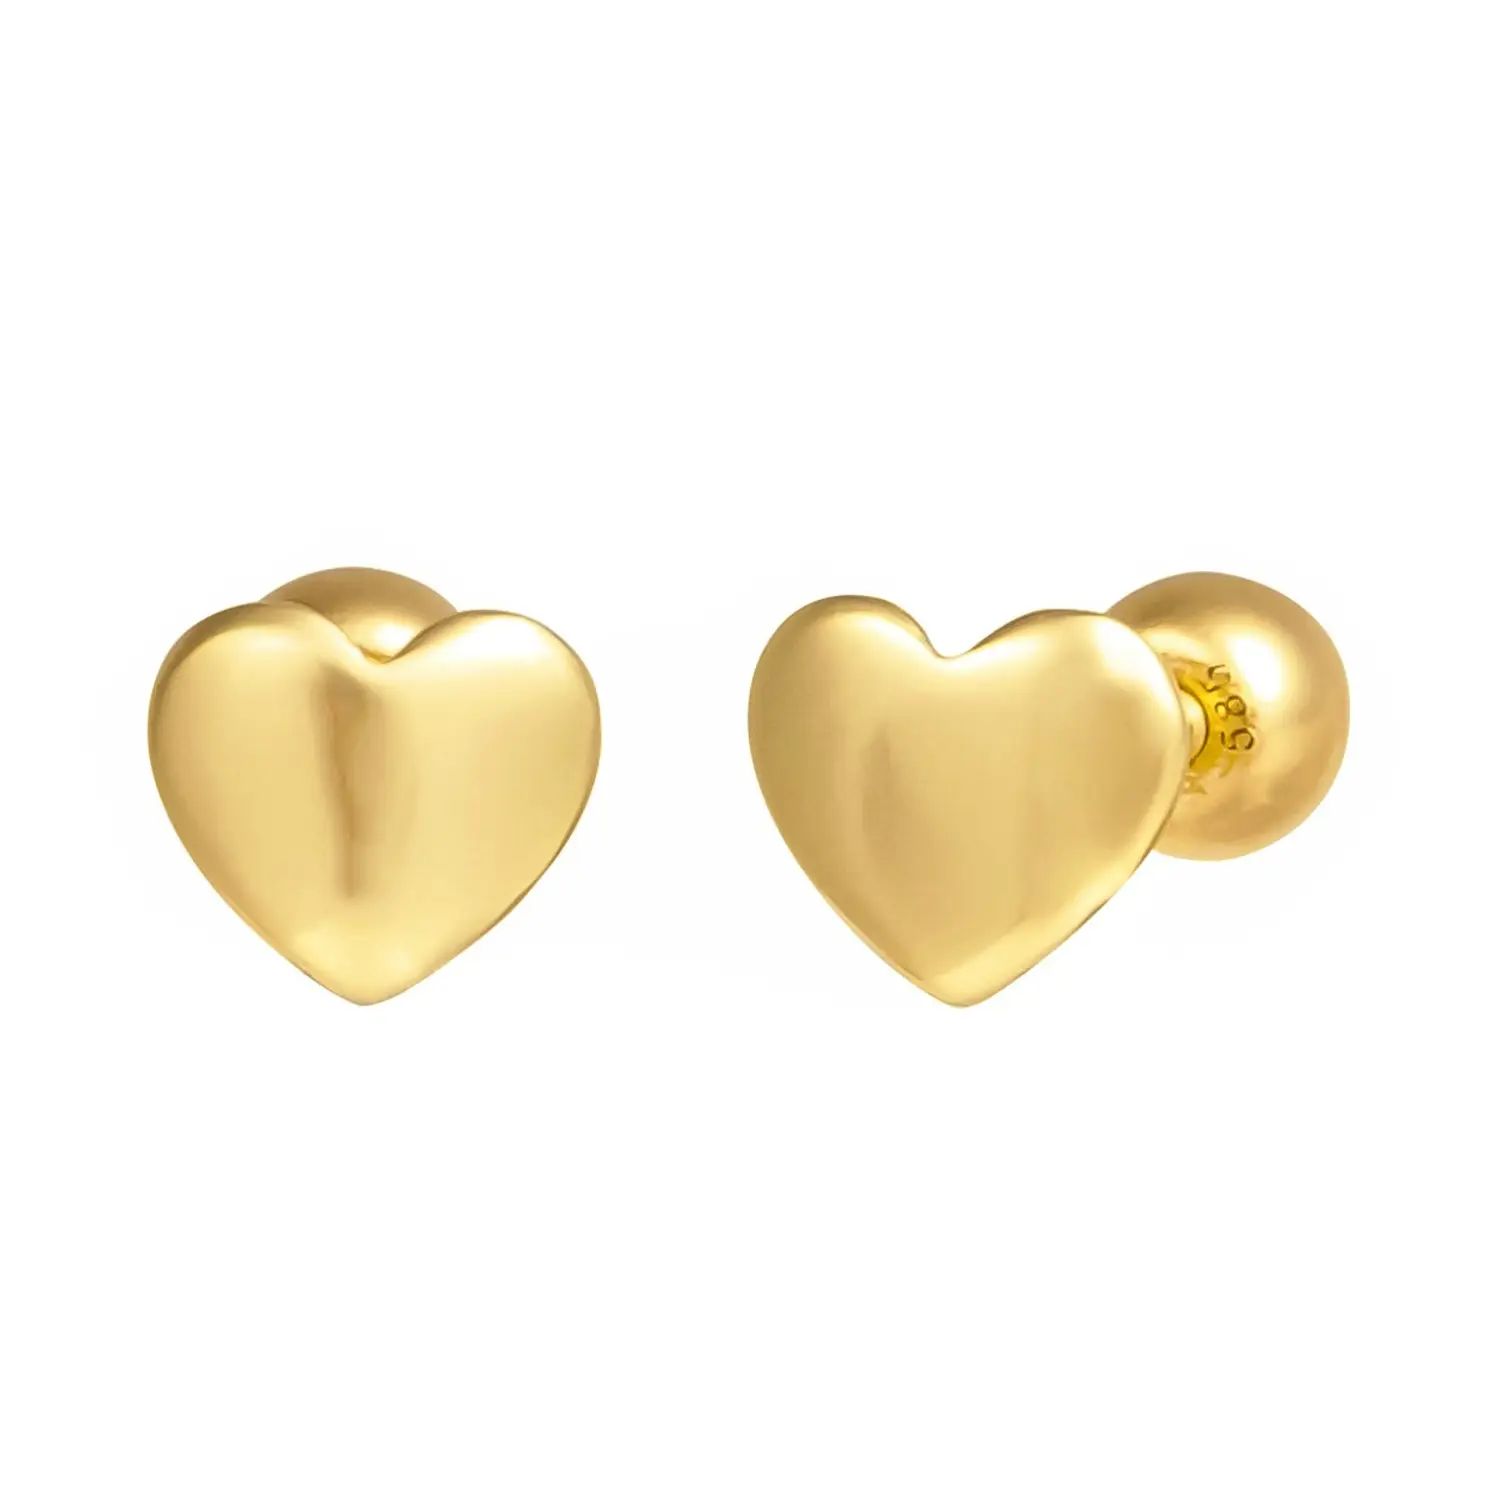 [Artpierce] 14k volume d'oro cuore piercing di base (S taglia) affermandosi come un marchio di punta nel settore della gioielleria in Corea